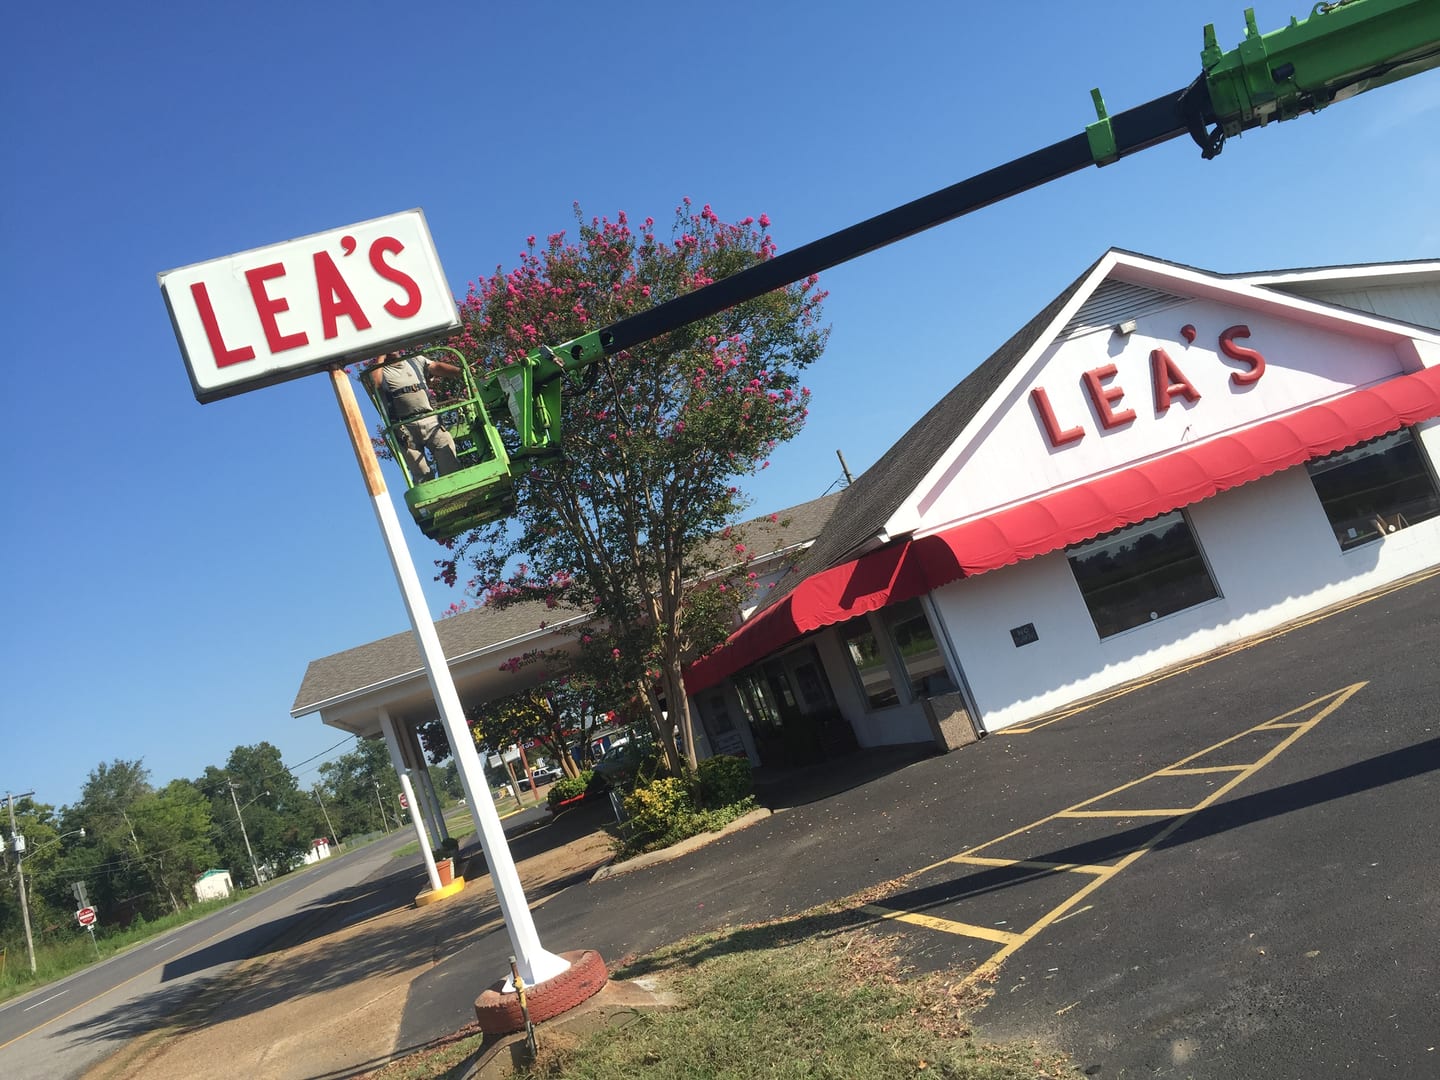 Lea's Lunchroom Restaurant Business Sign Louisiana HLA Sign Company